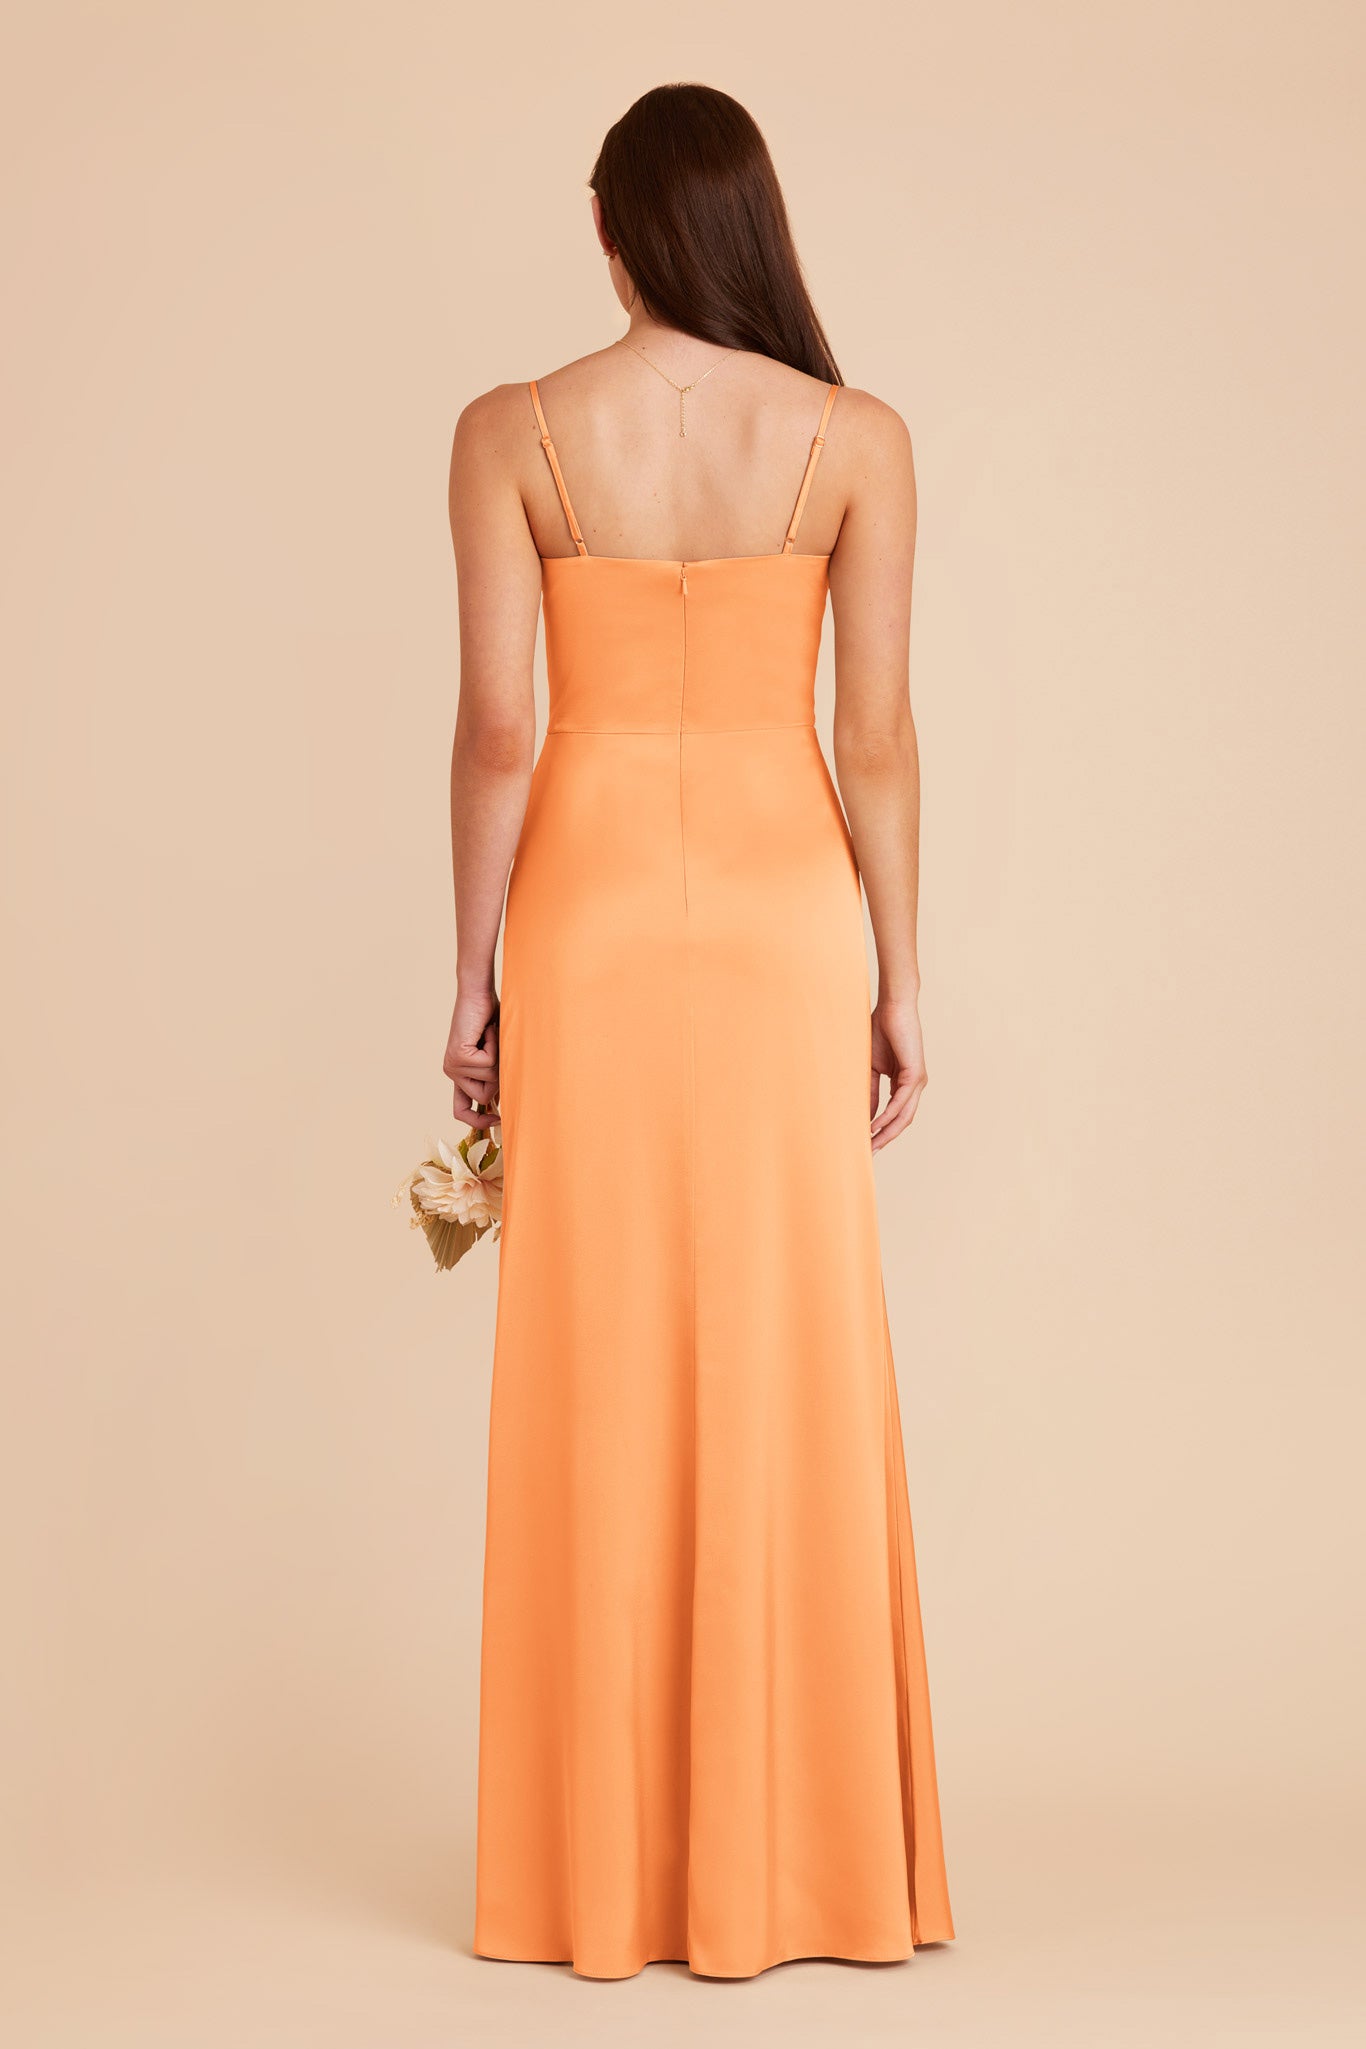 Apricot Jennifer Matte Satin Dress by Birdy Grey